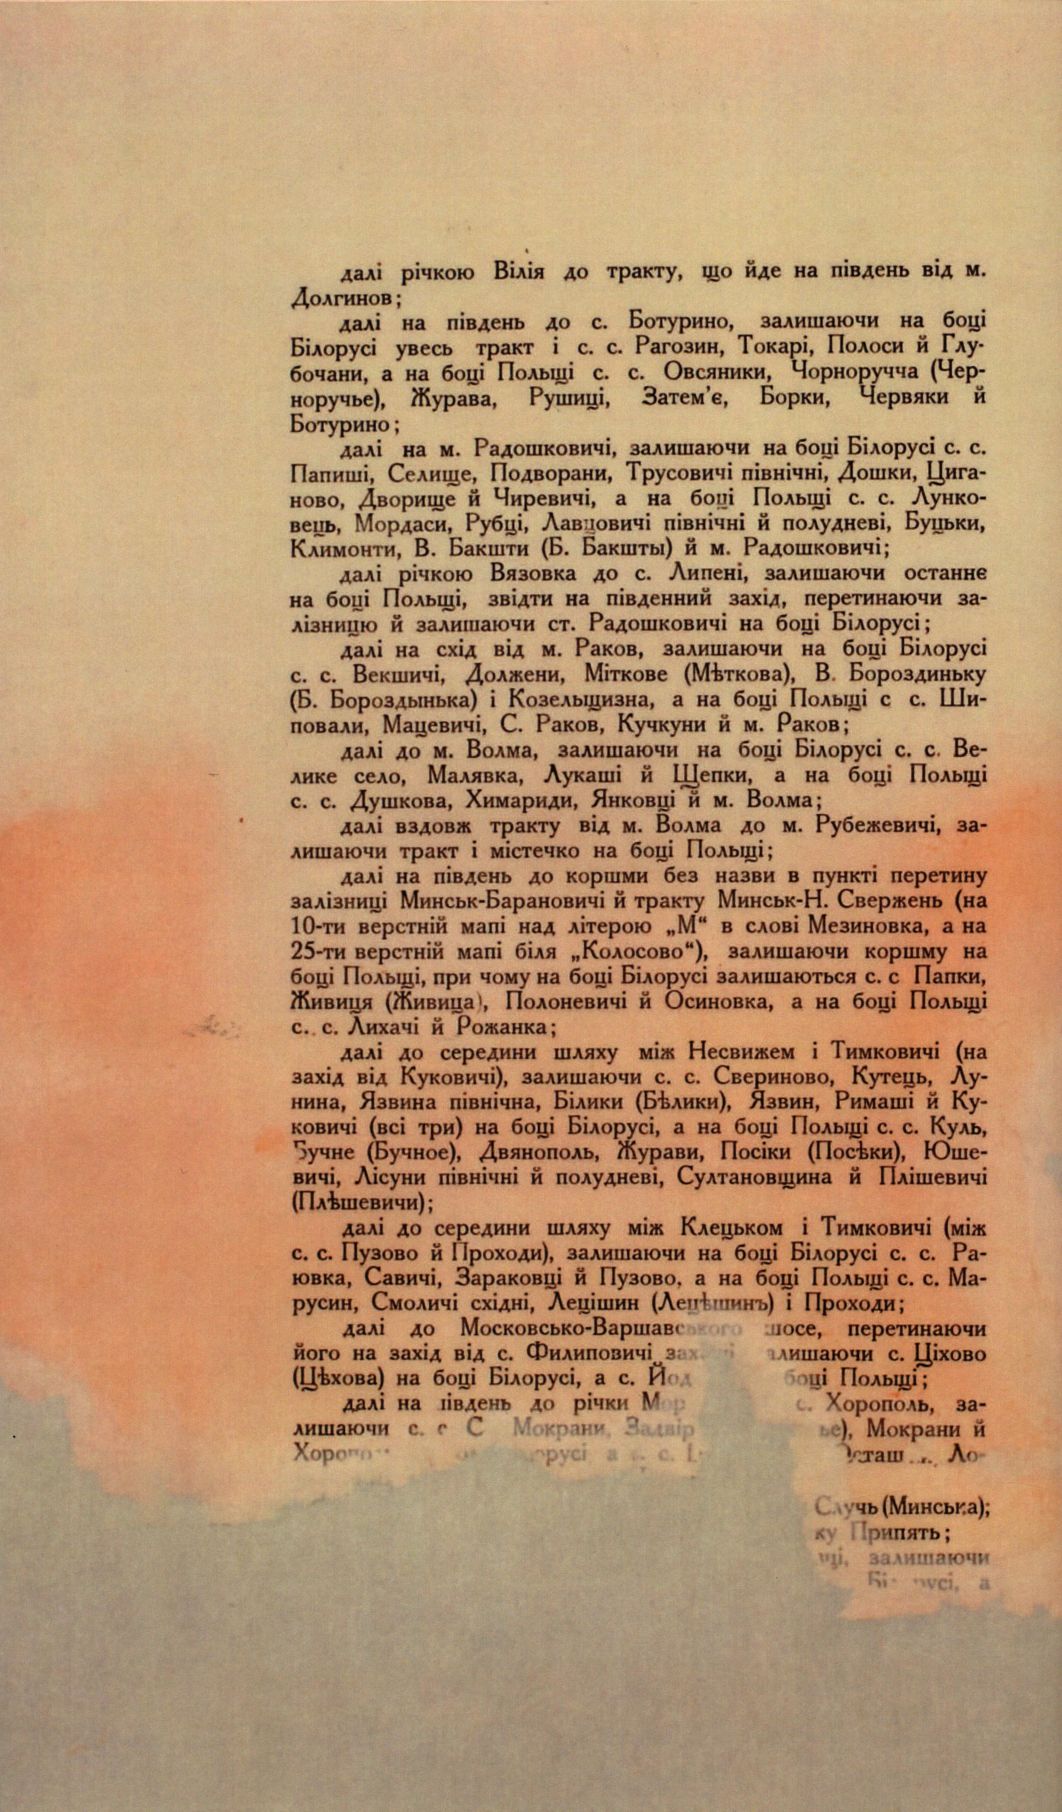 Traktat Pokoju między Polską a Rosją i Ukrainą podpisany w Rydze dnia 18 marca 1921 roku, s. 36, MSZ, sygn. 6739.